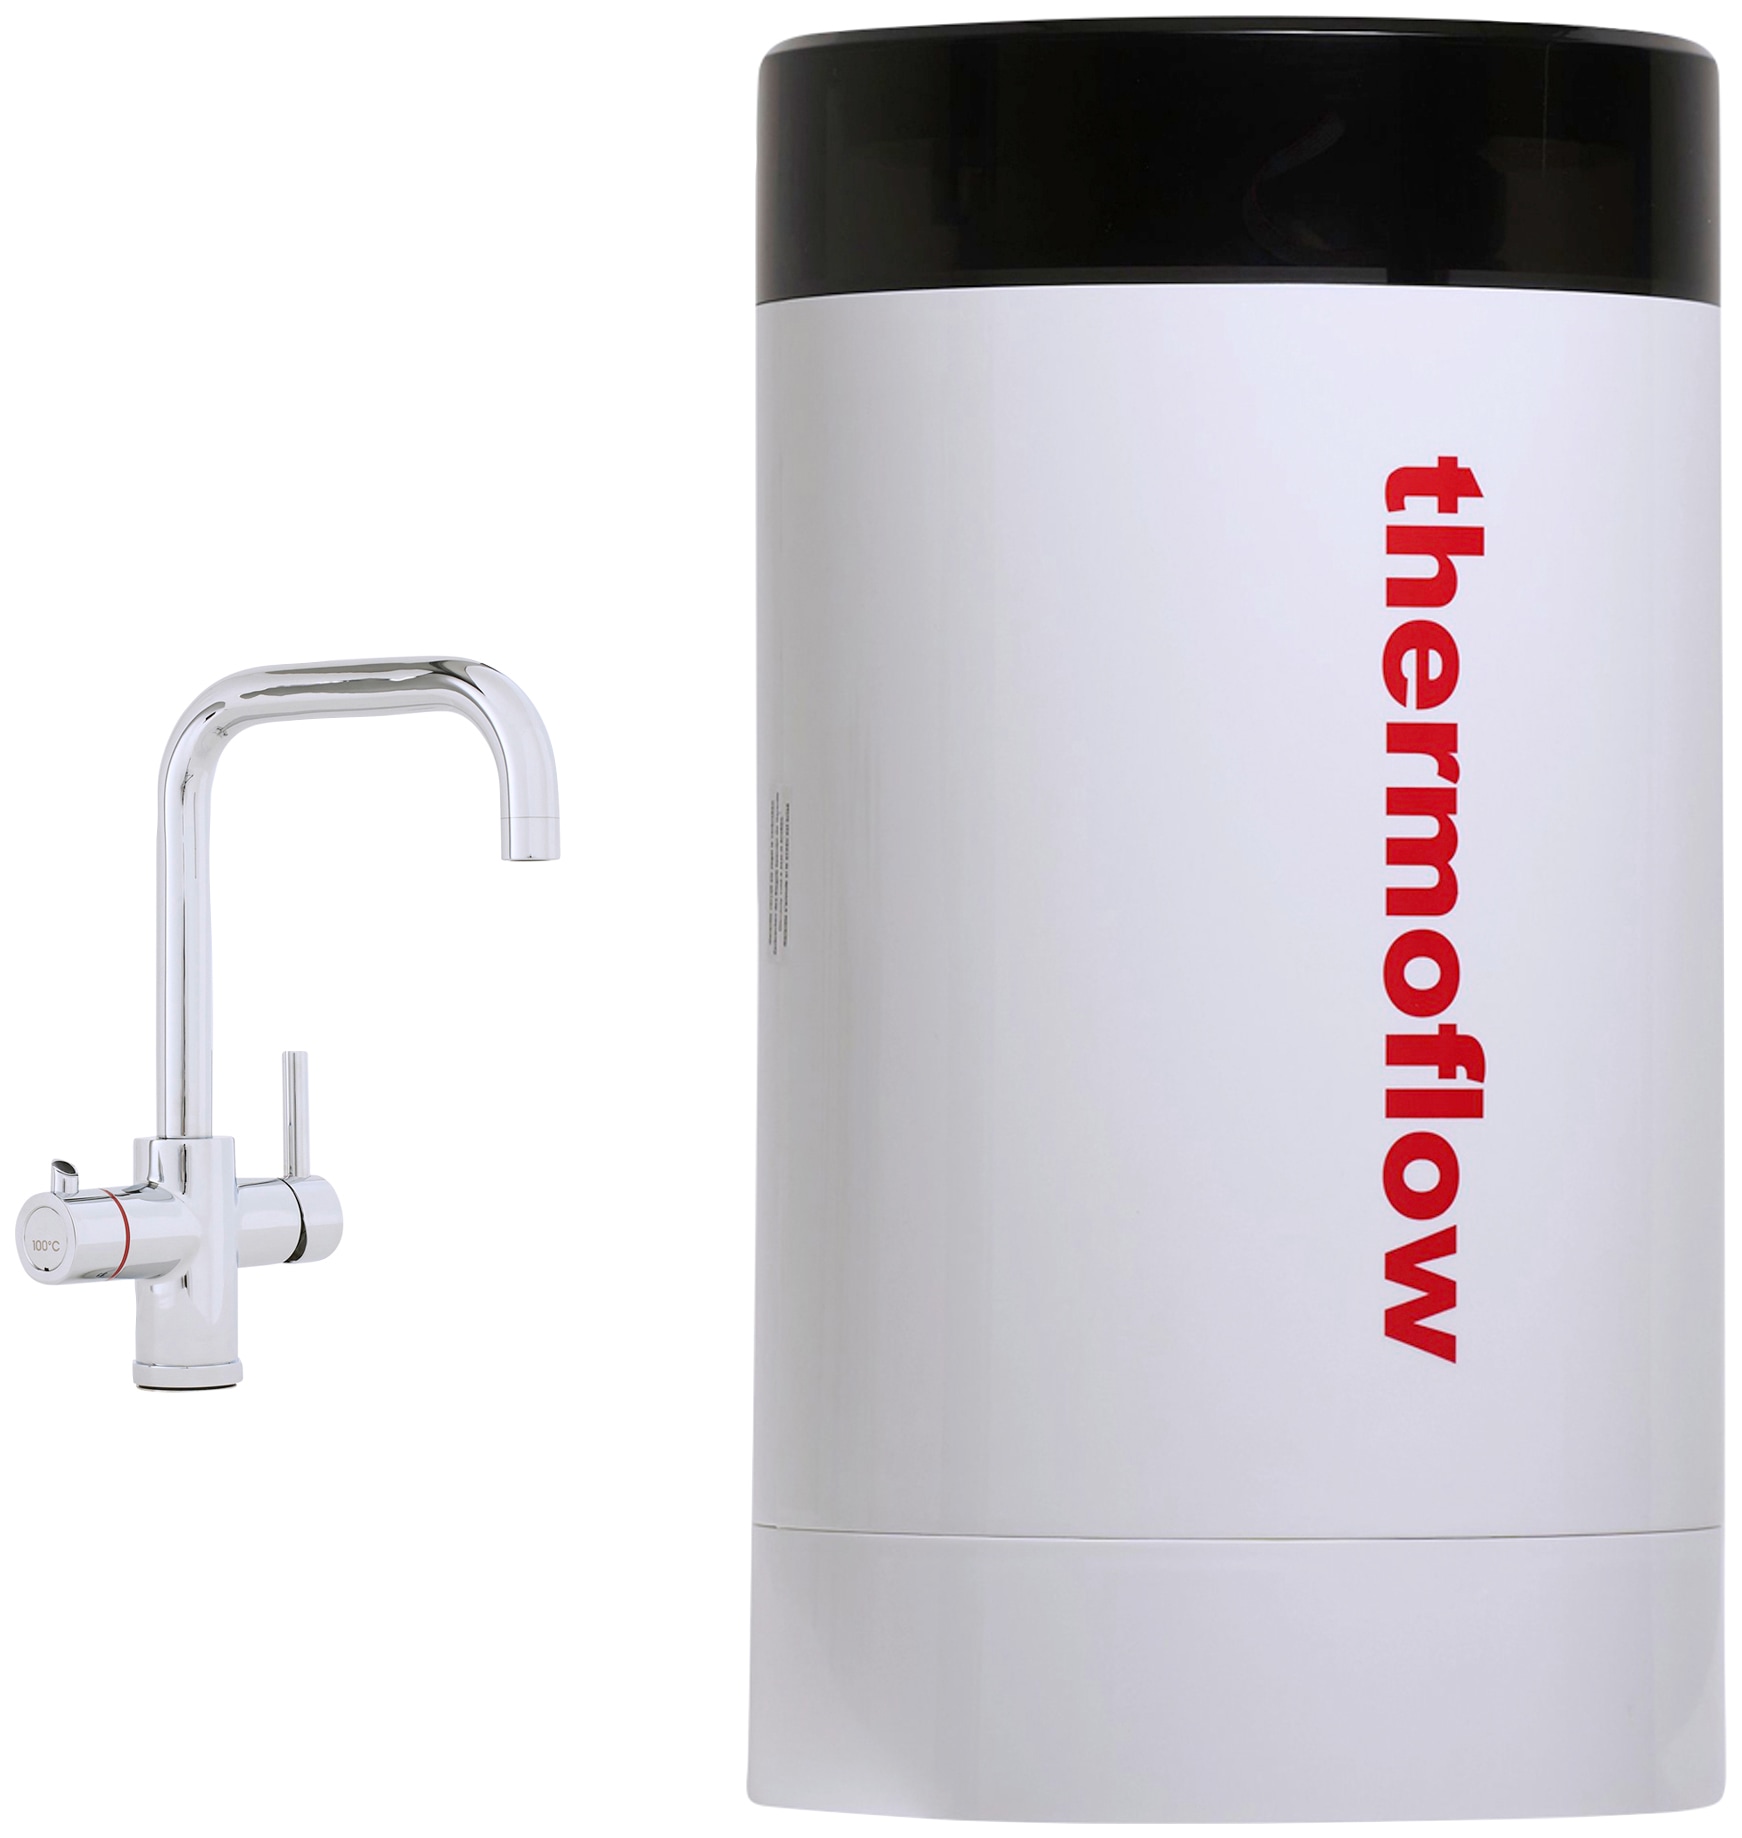 Untertisch-Trinkwassersystem »Thermoflow 100E«, (Komplett-Set), 5 Liter Boiler...